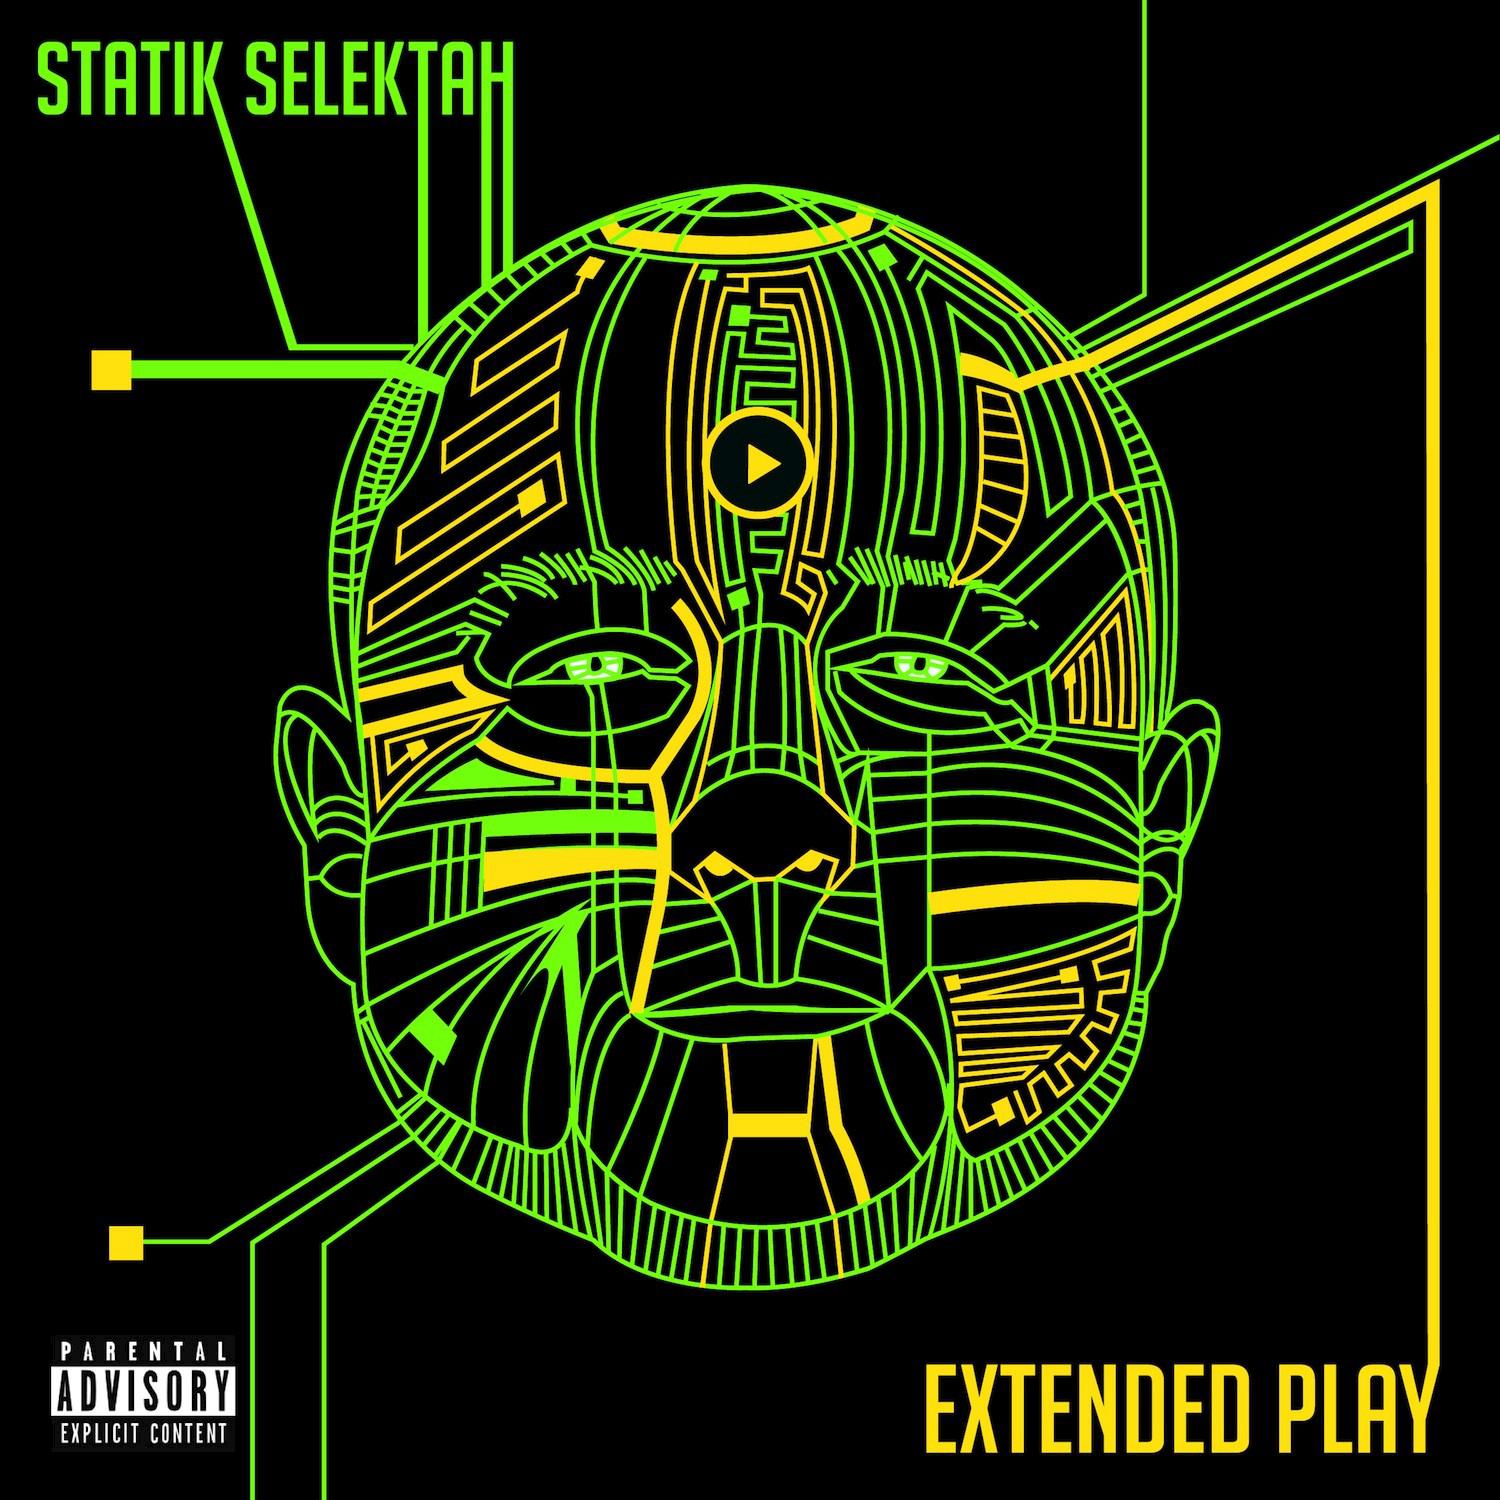 Statik Selektah - Game Break (feat. Lecrae, Posdnuos of De La Soul, Termanology)